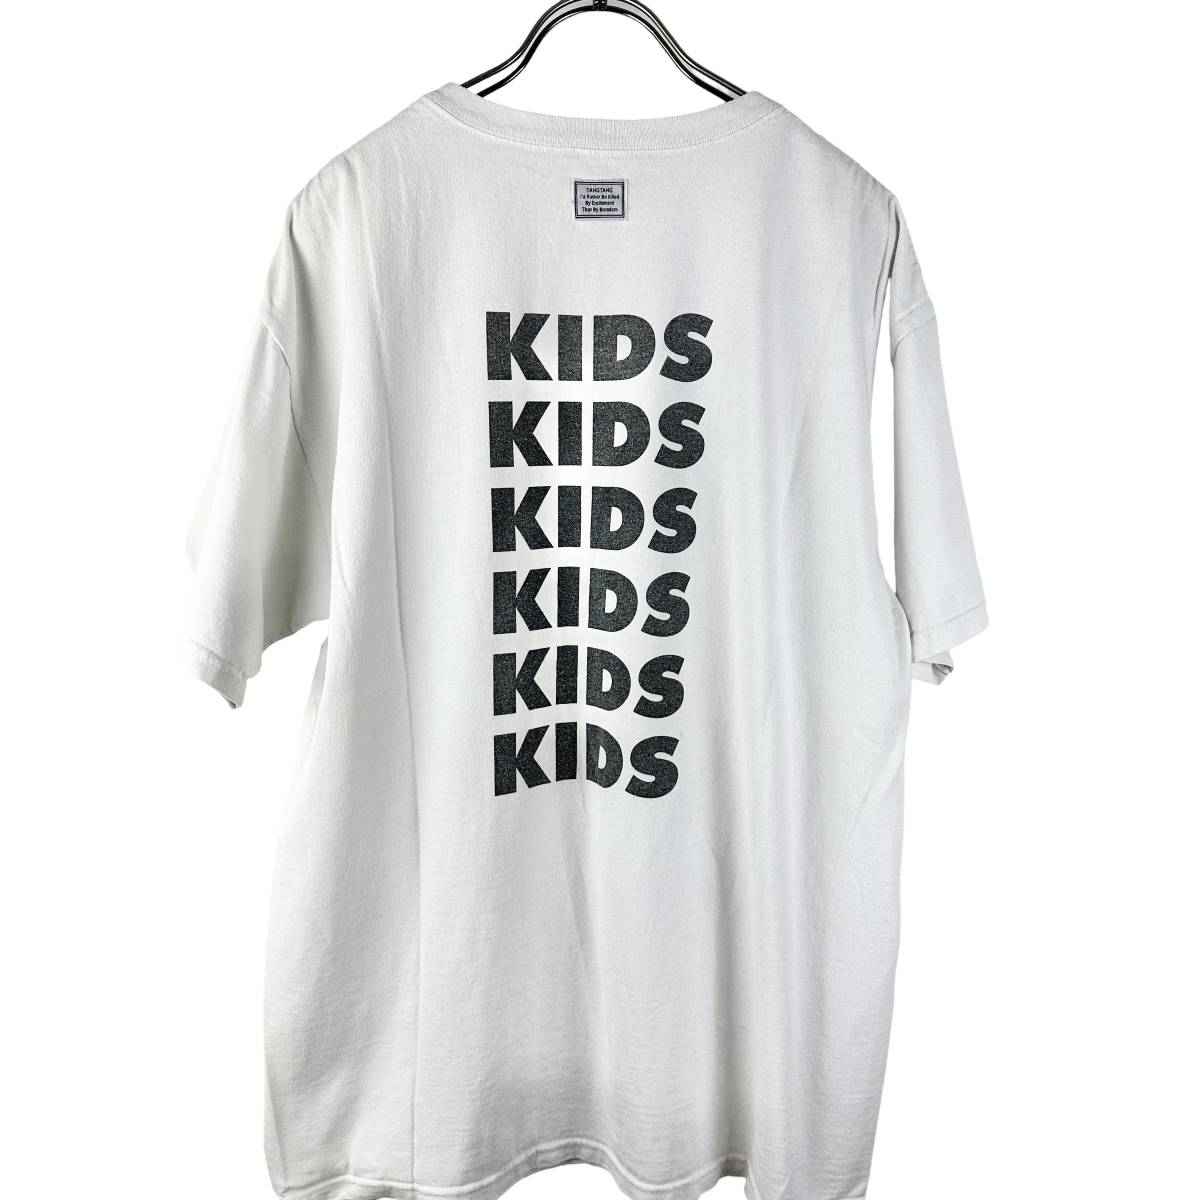 TANGTANG DESIGN(タンタンデザイン) KIDS LOGO T Shirt (white)